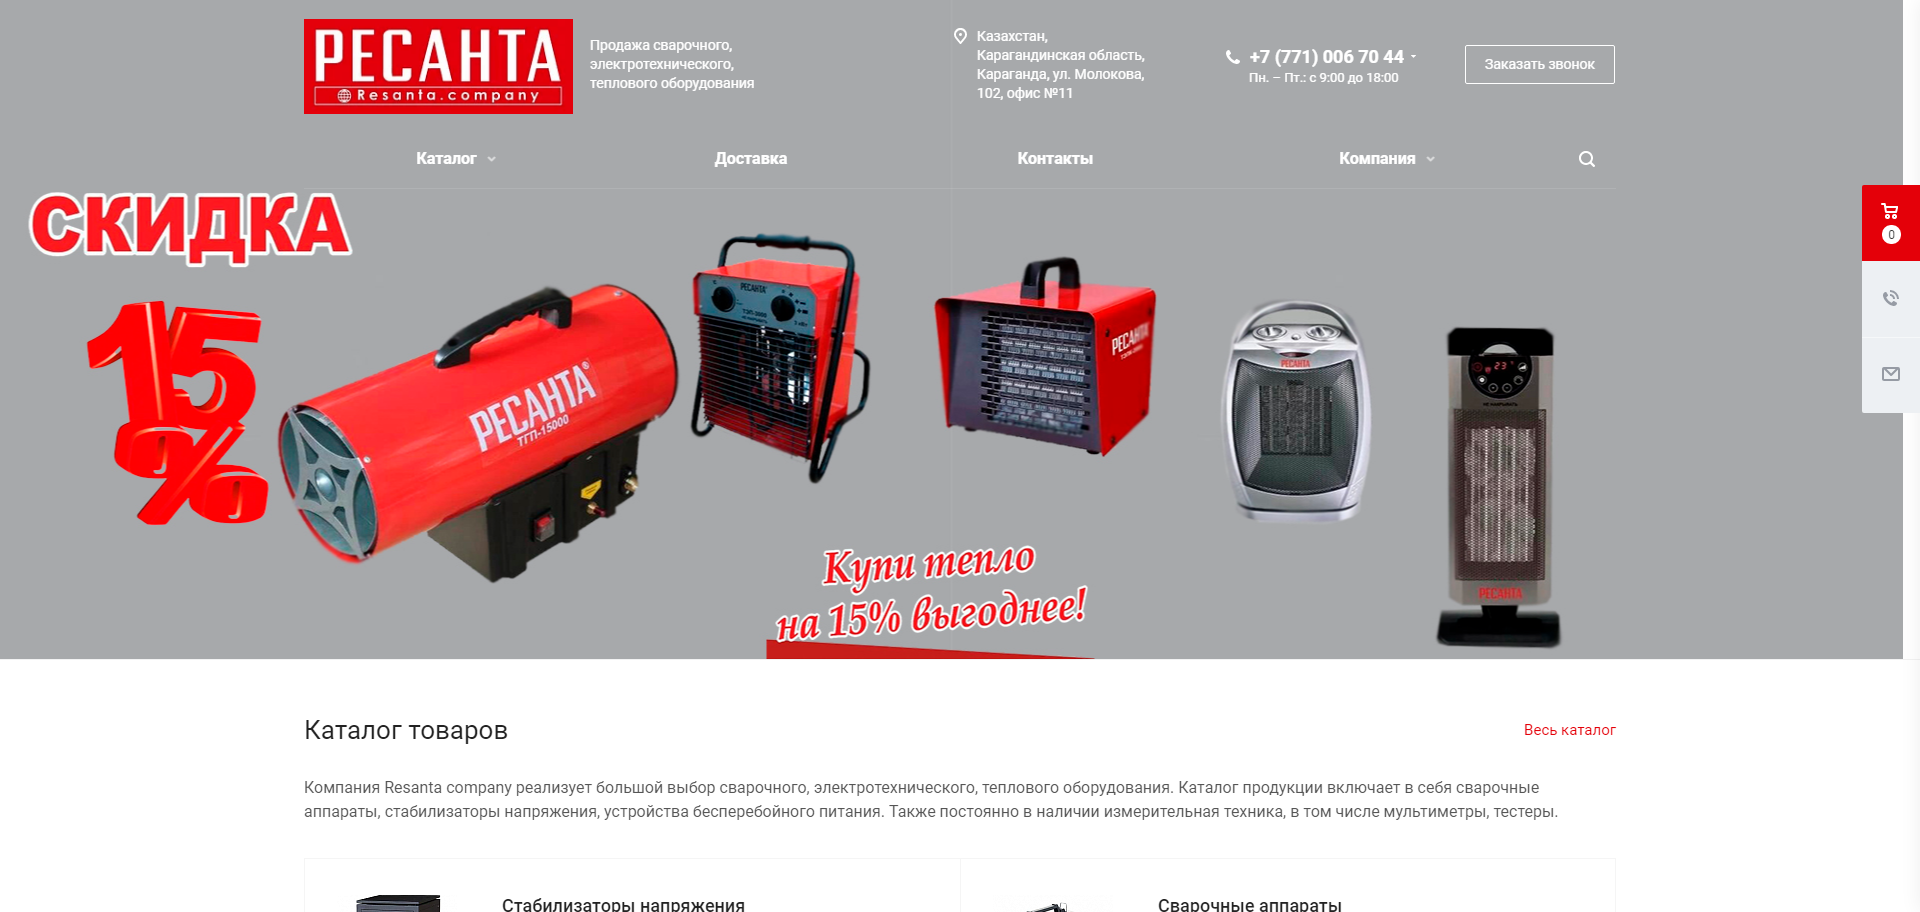 продажа сварочного, электротехнического, теплового оборудования resanta.company